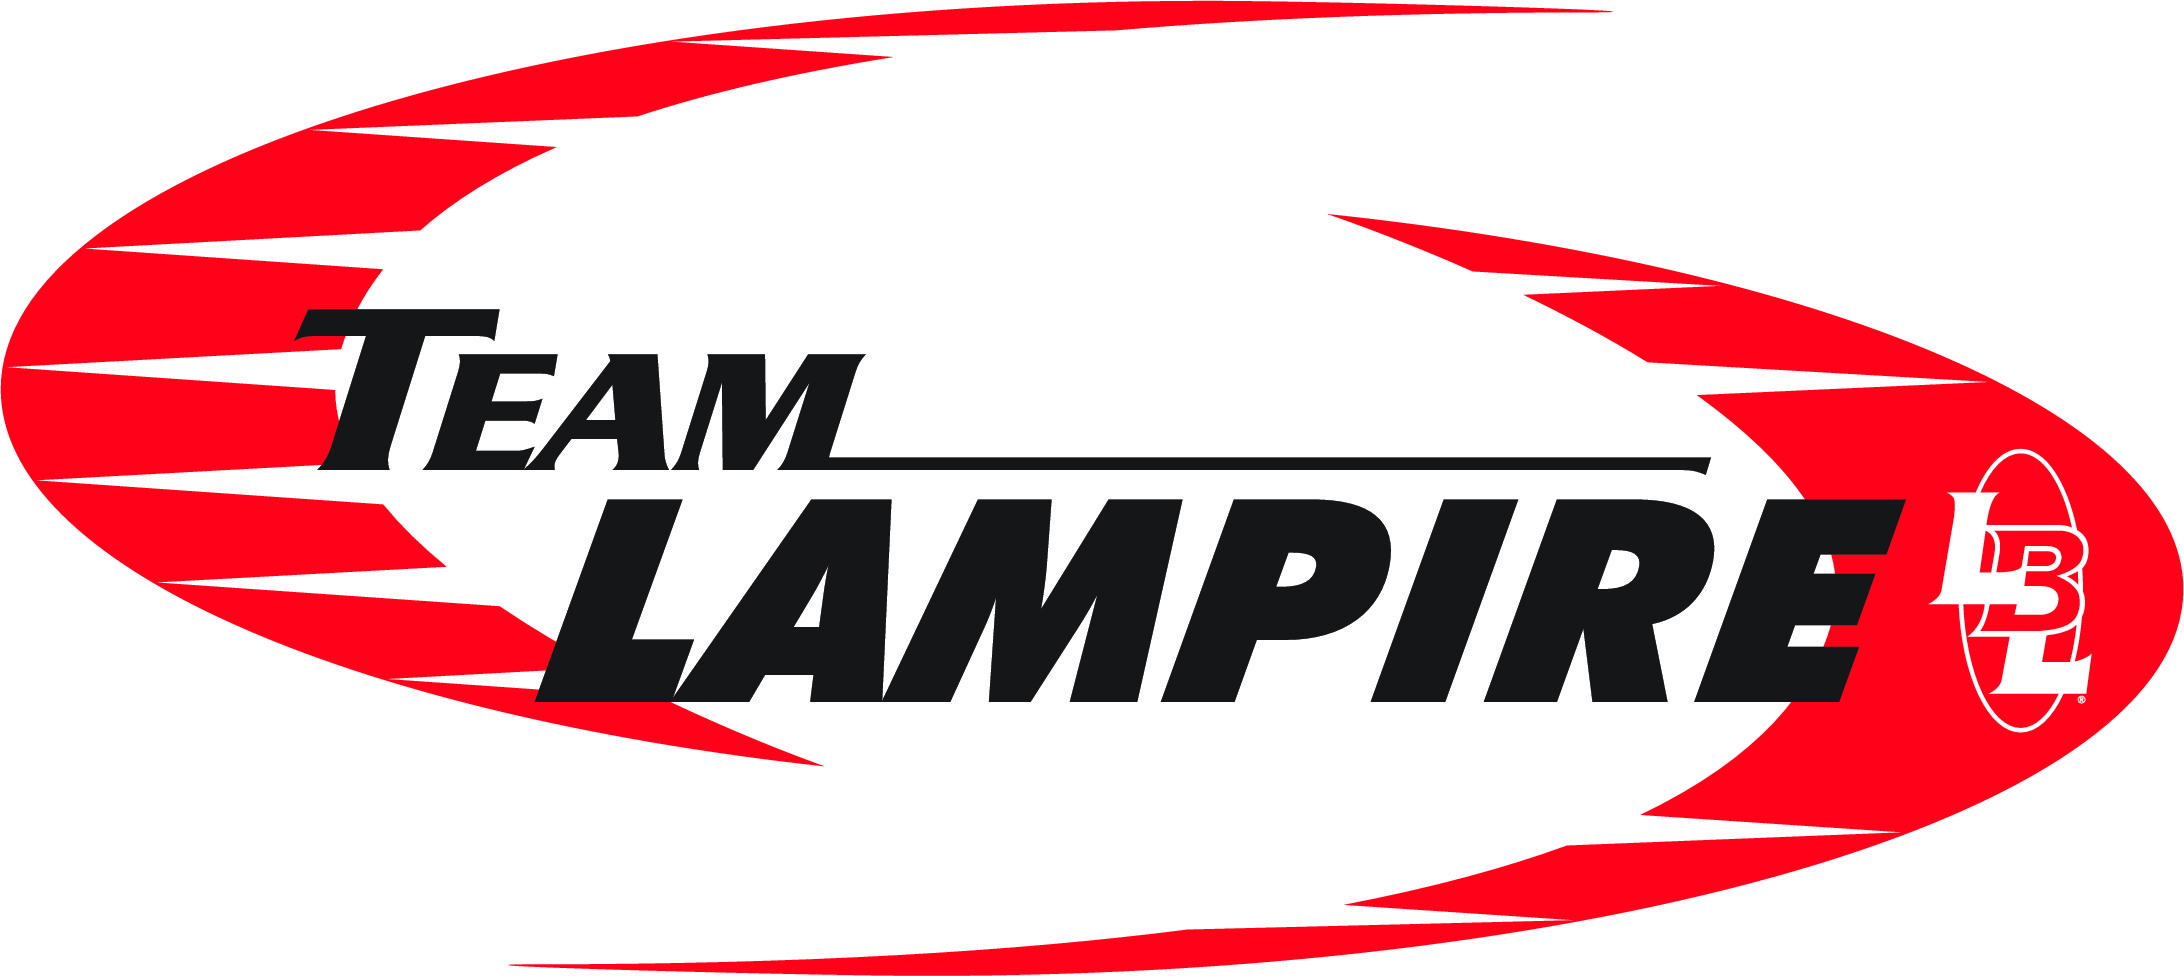 Team Lampire